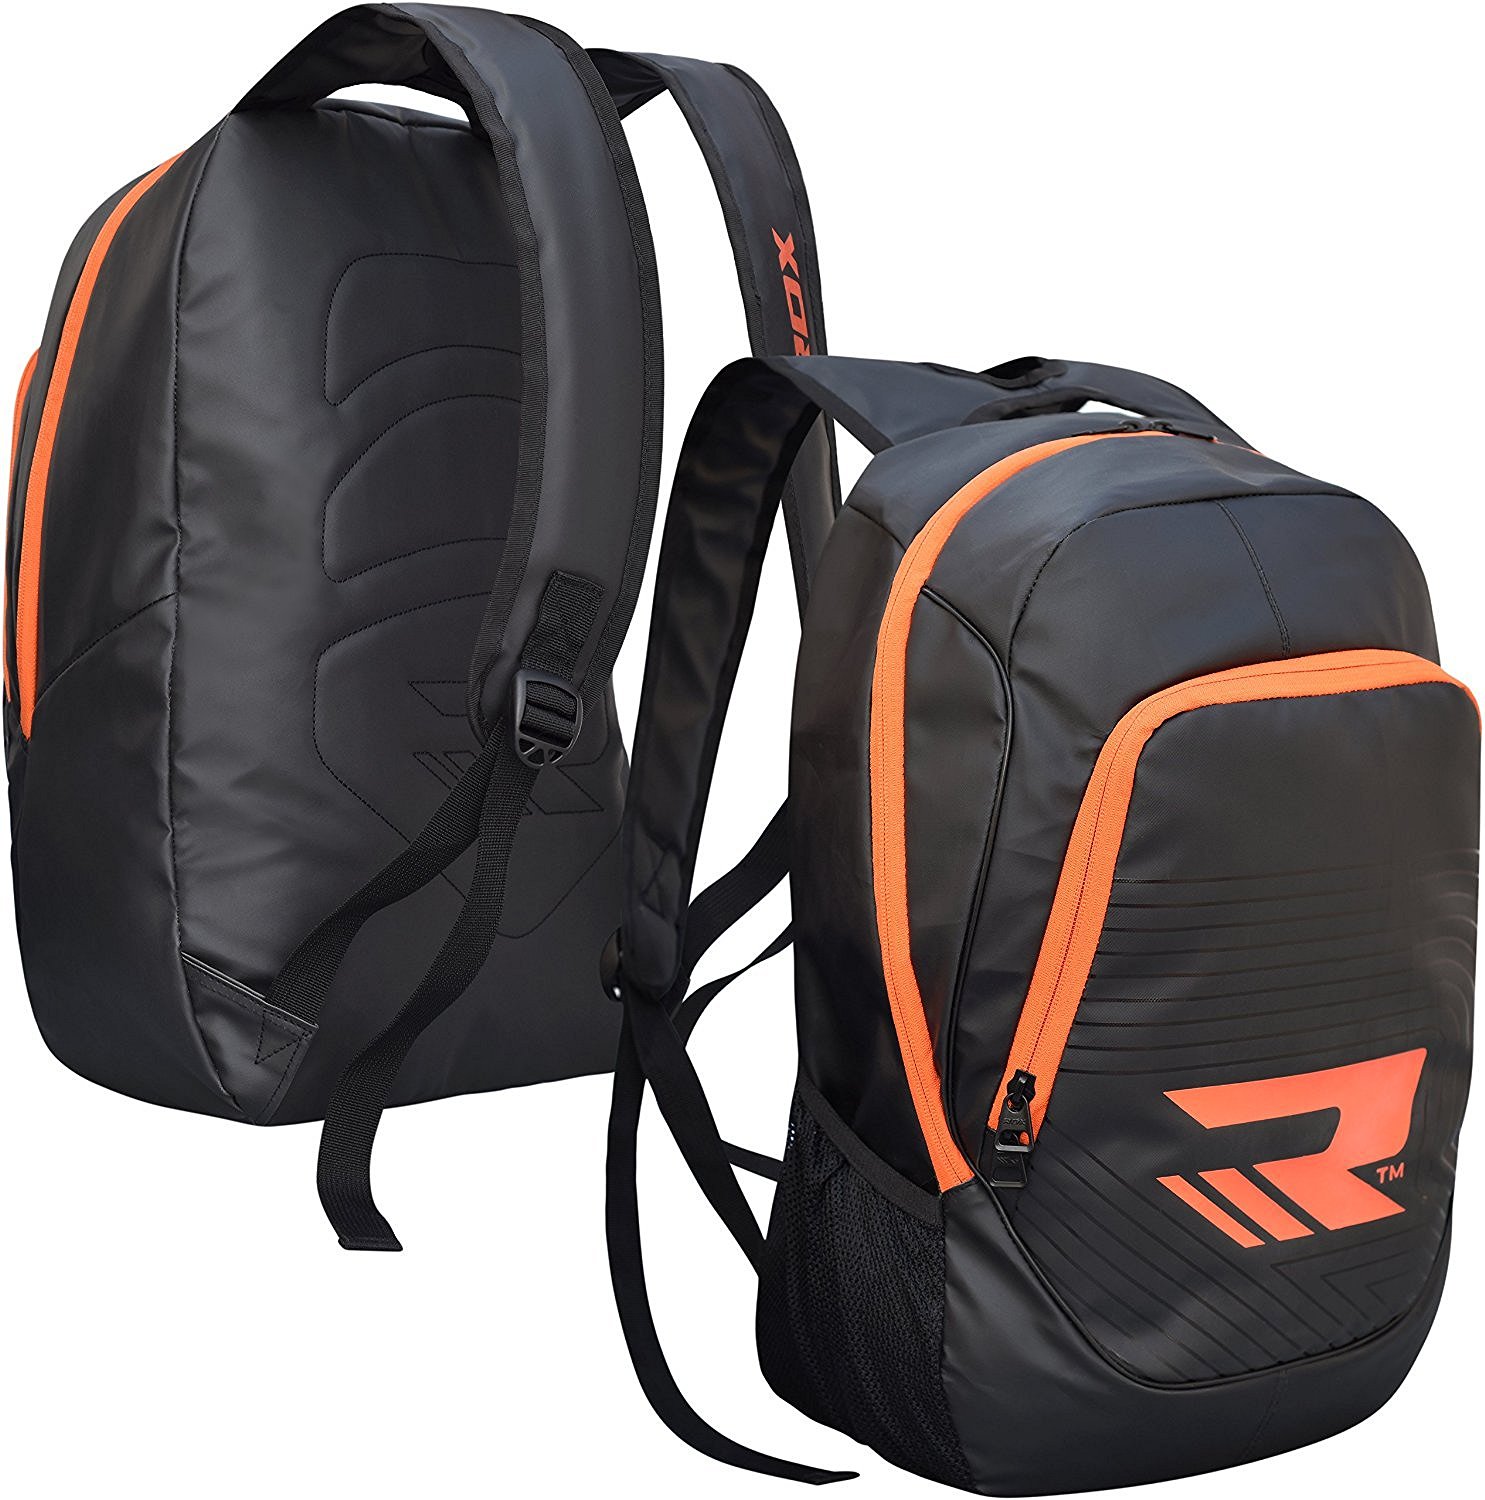 RDX 22" Water Resistant Sport Duffle Adjustable Shoulder bag strap - image 1 of 1